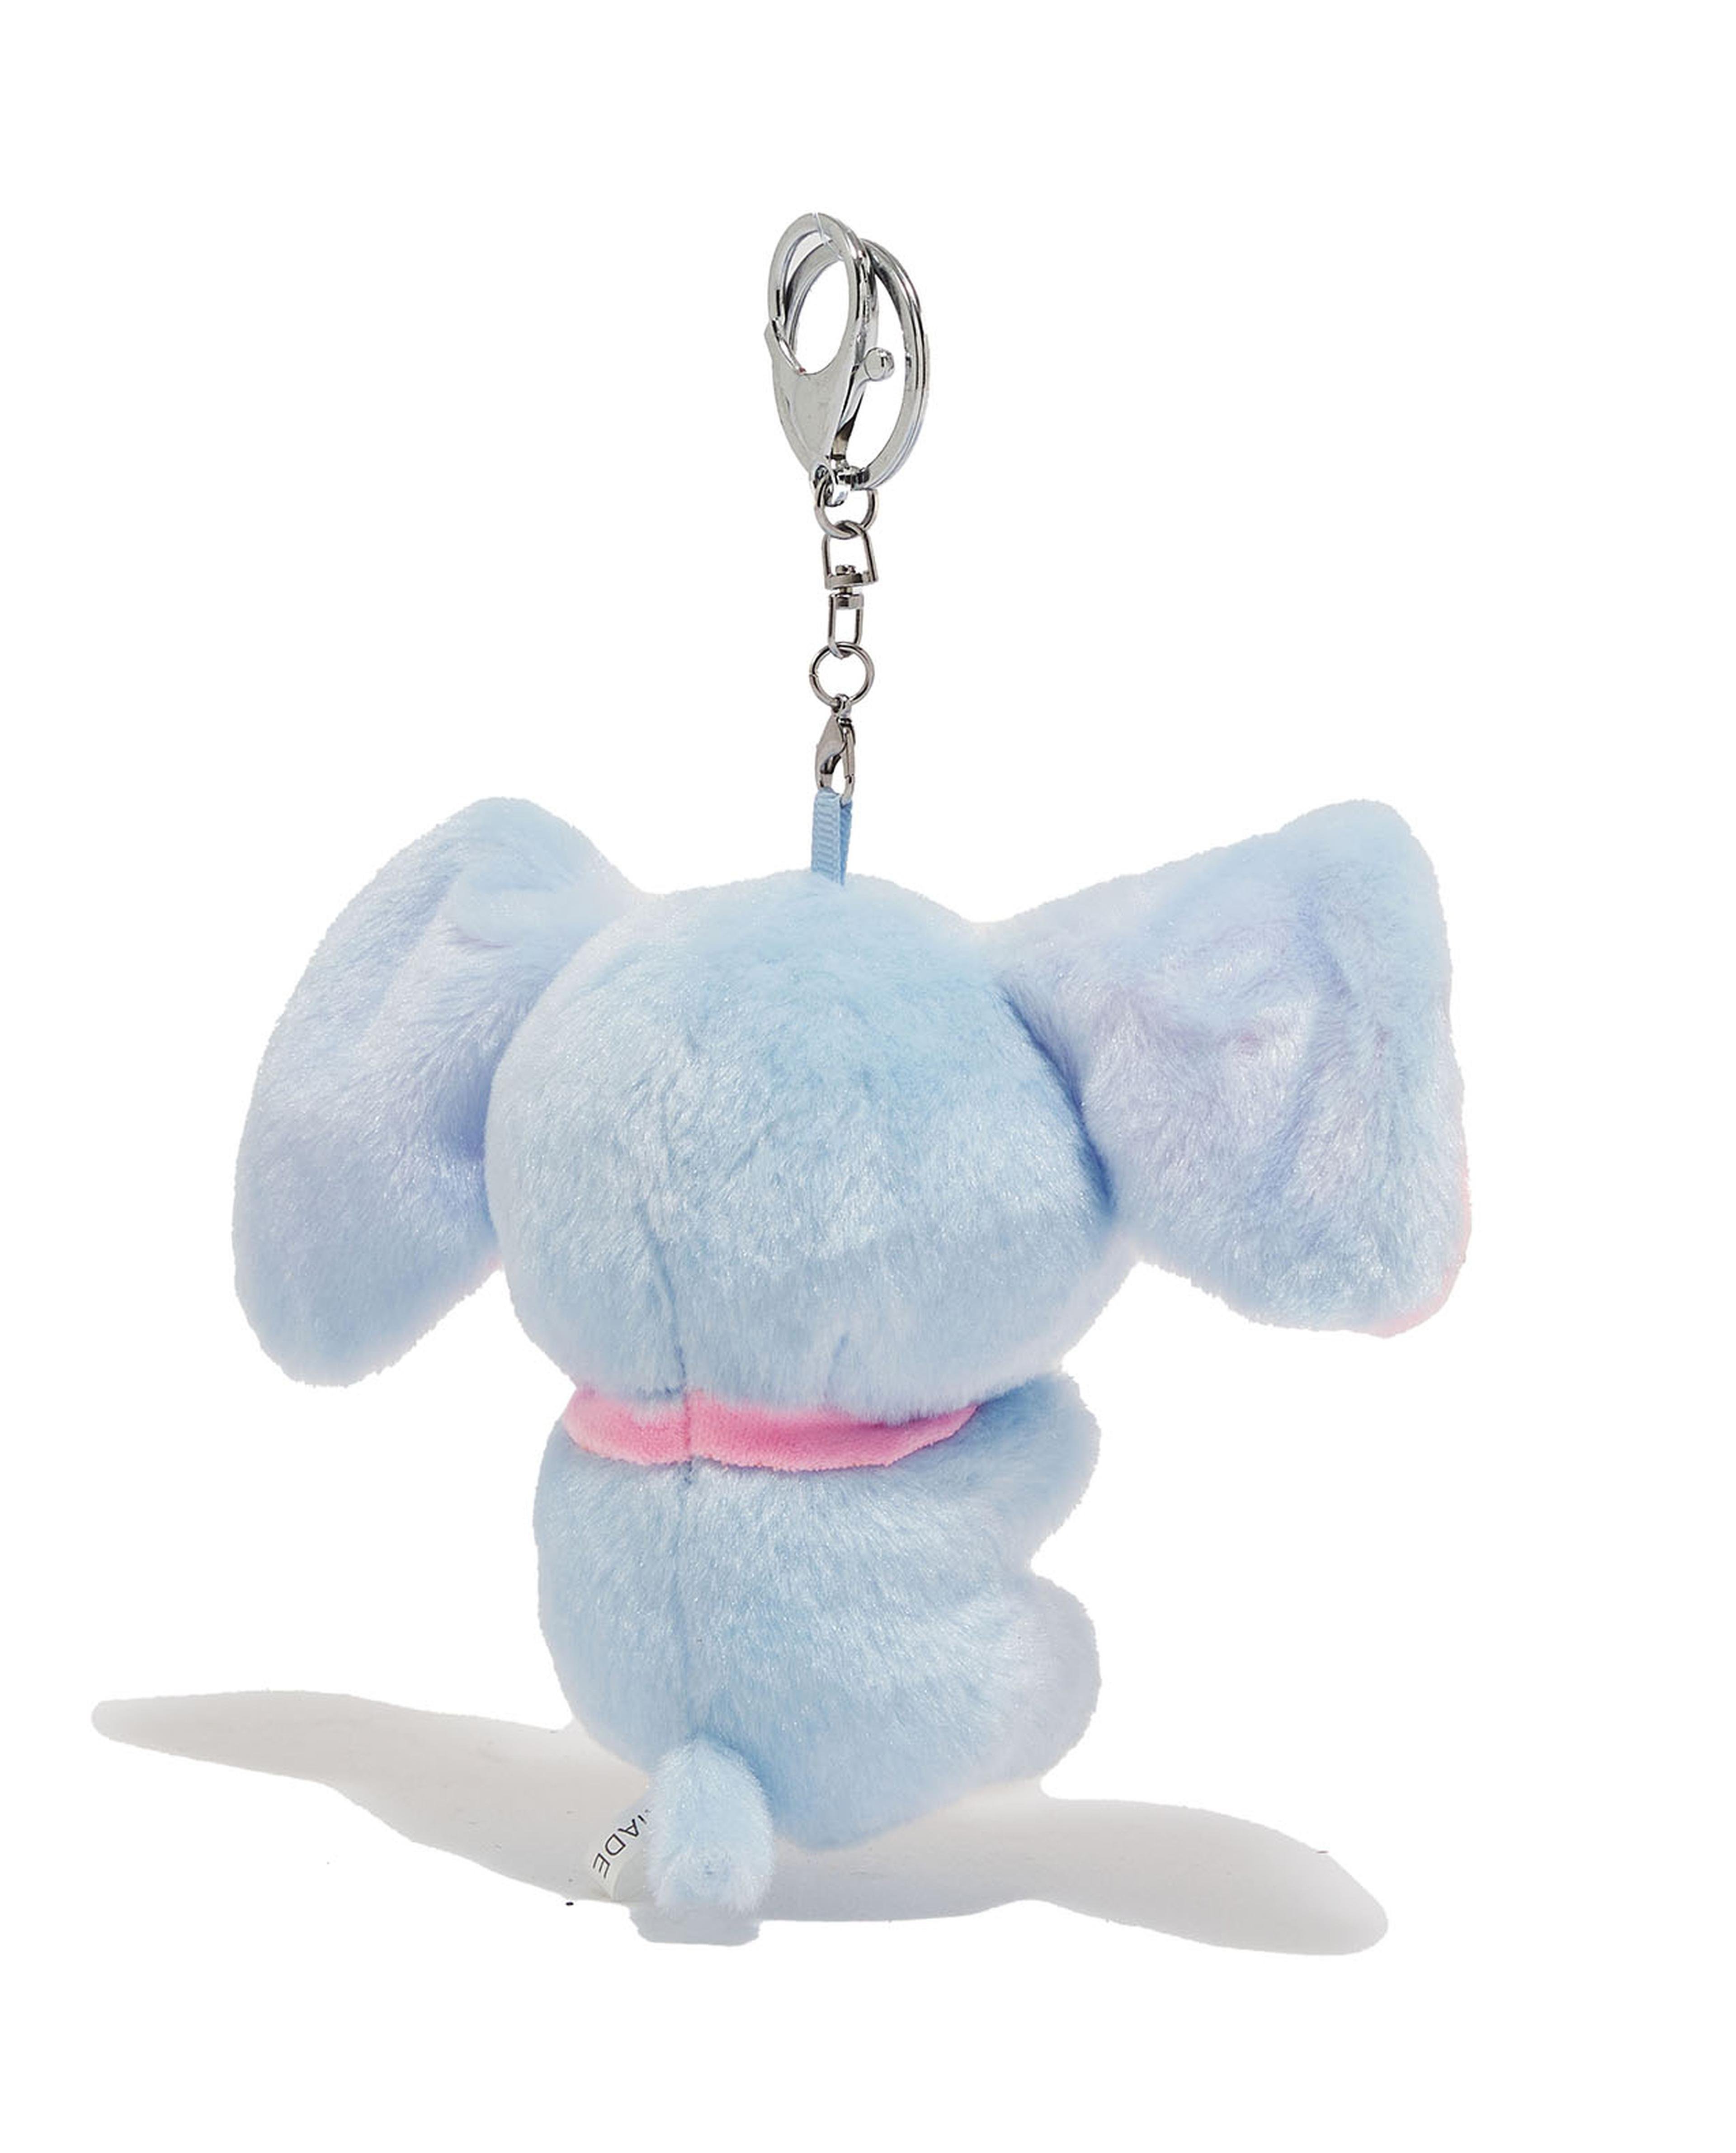 Elephant Soft Toy Keychain